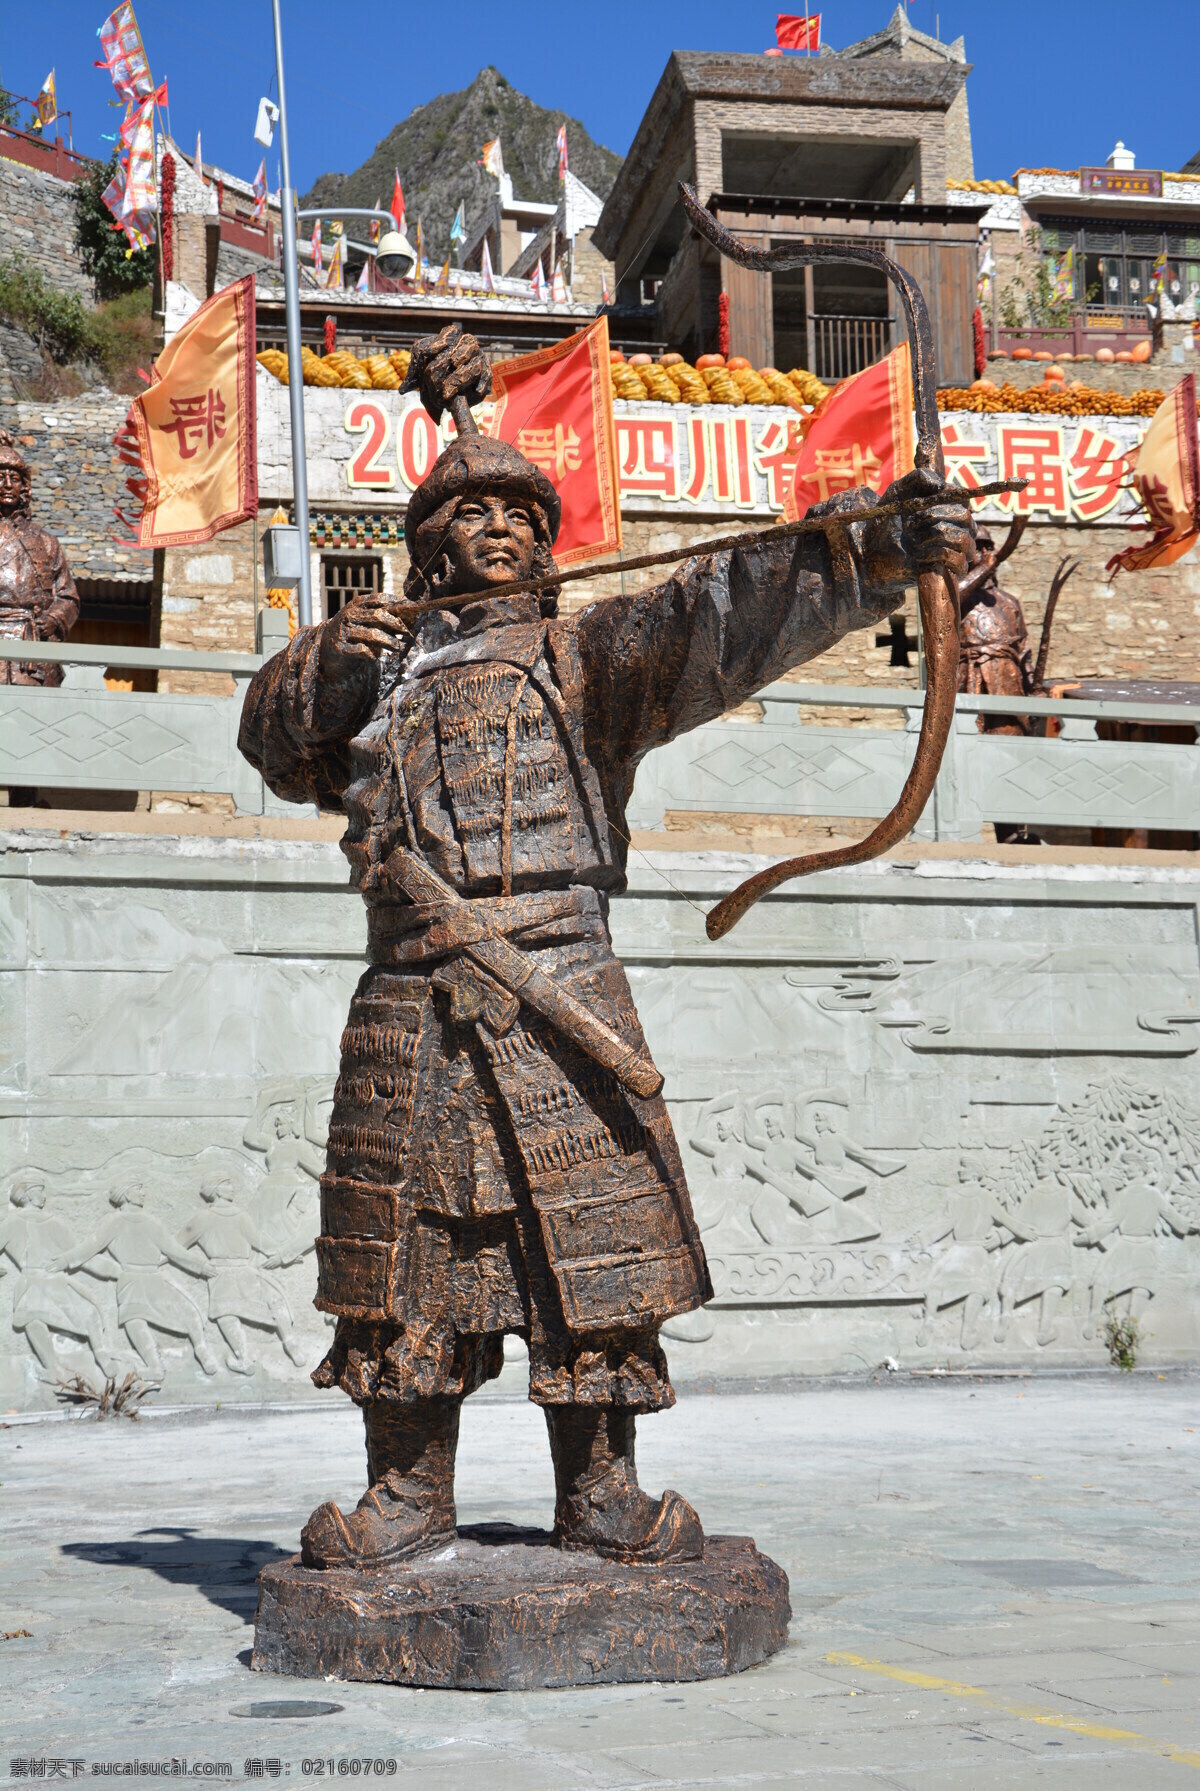 甘堡藏寨 弓箭手塑像 弓箭手 藏寨 藏族 藏文化 藏元素 藏族旅游 甘堡藏寨风景 旅游摄影 人文景观